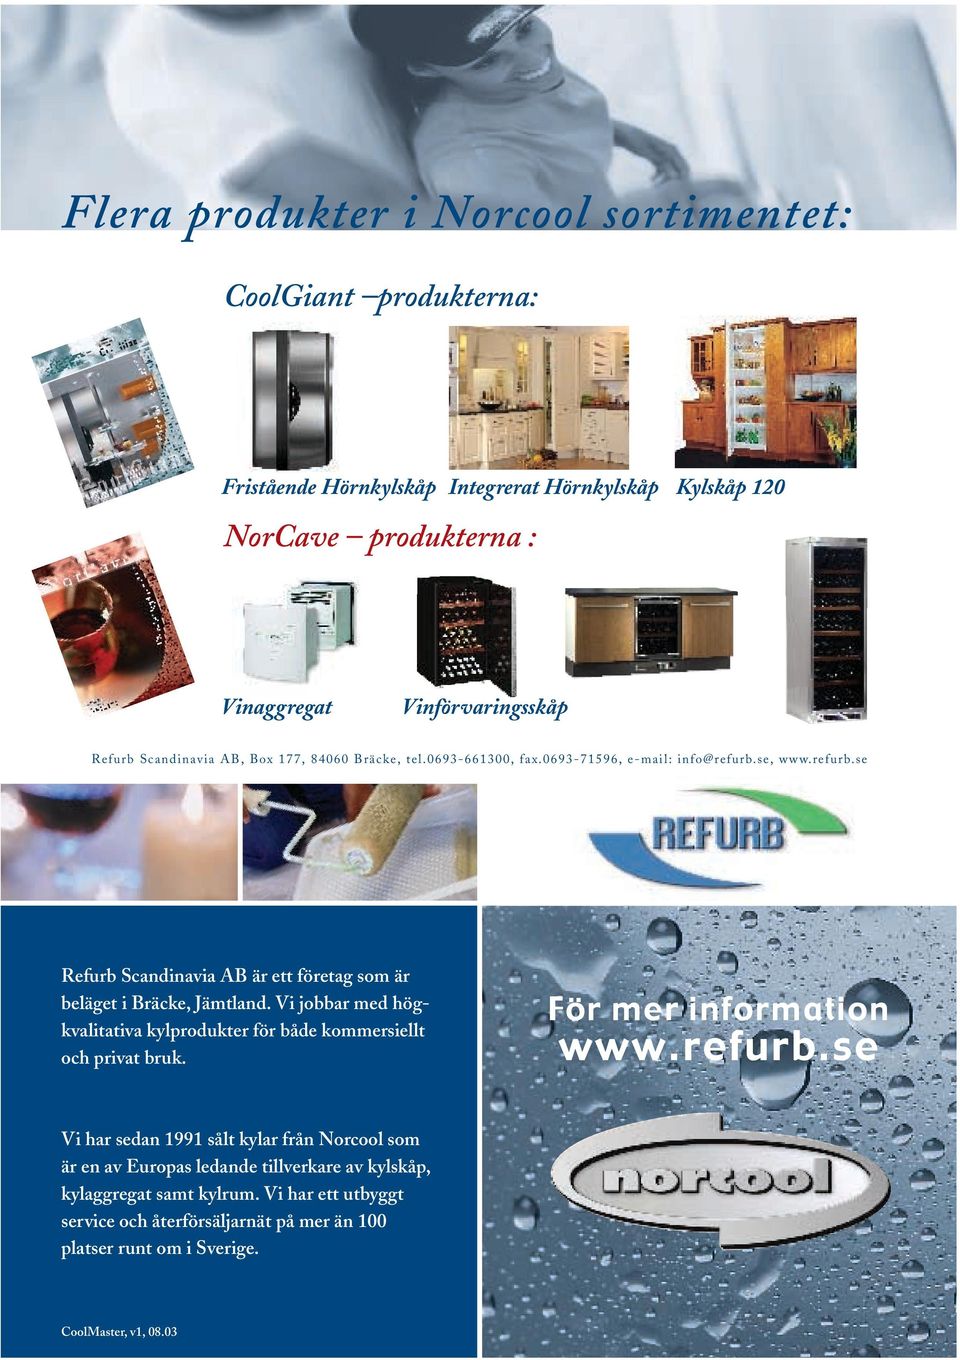 Vi jobbar med högkvalitativa kylprodukter för både kommersiellt och privat bruk. För mer information www.refurb.